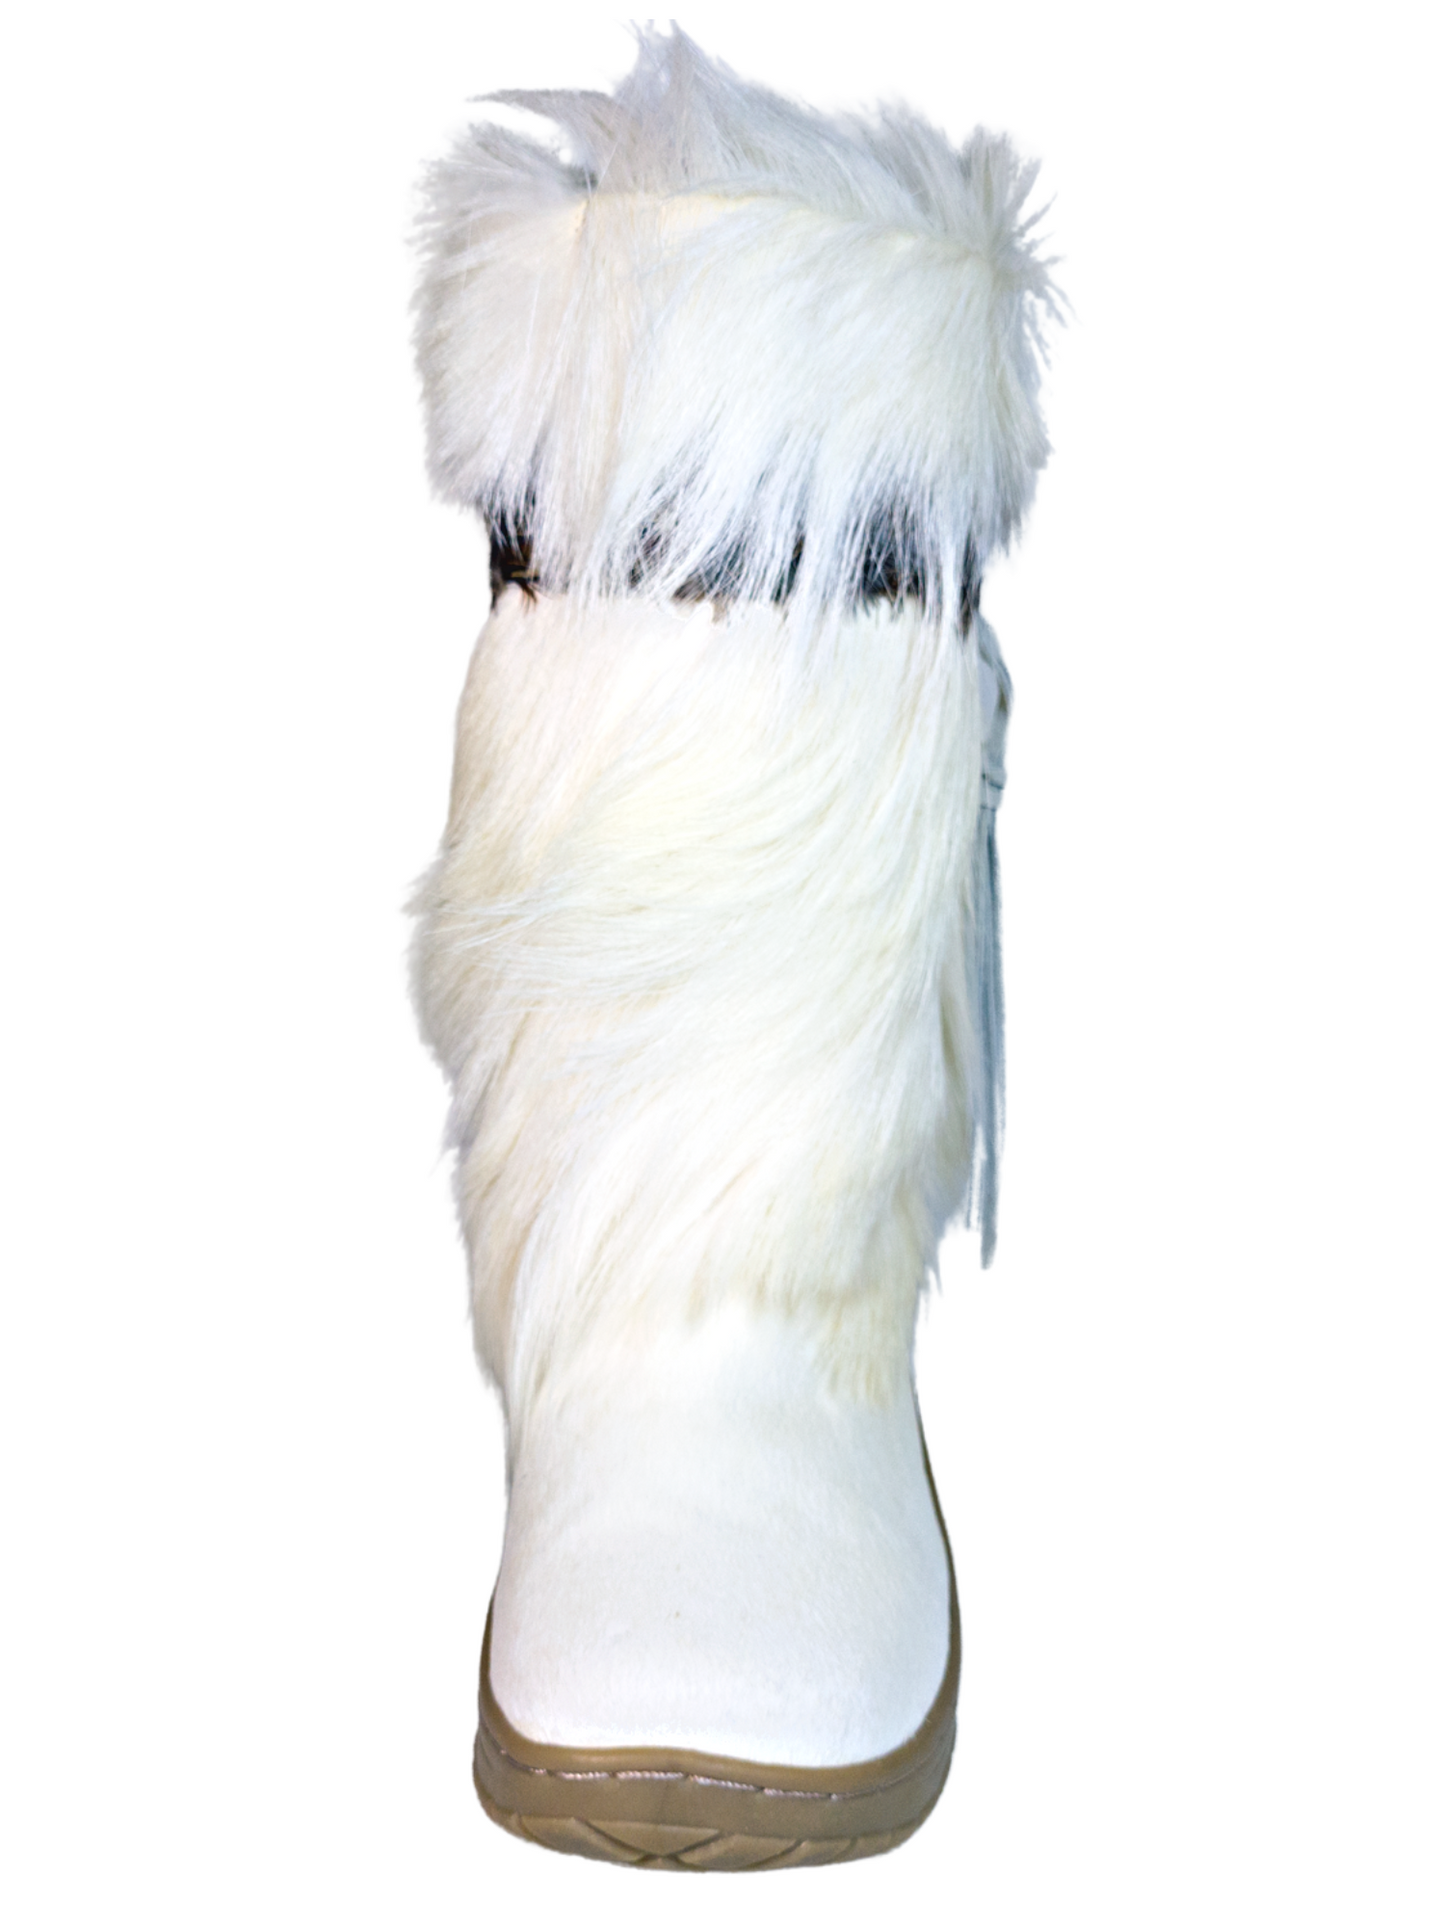 Botas de Invierno para la Nieve de Piel Genuina con Pelo/Pelo de Cabra para Mujer 'Bearpaw' - ID: 7108